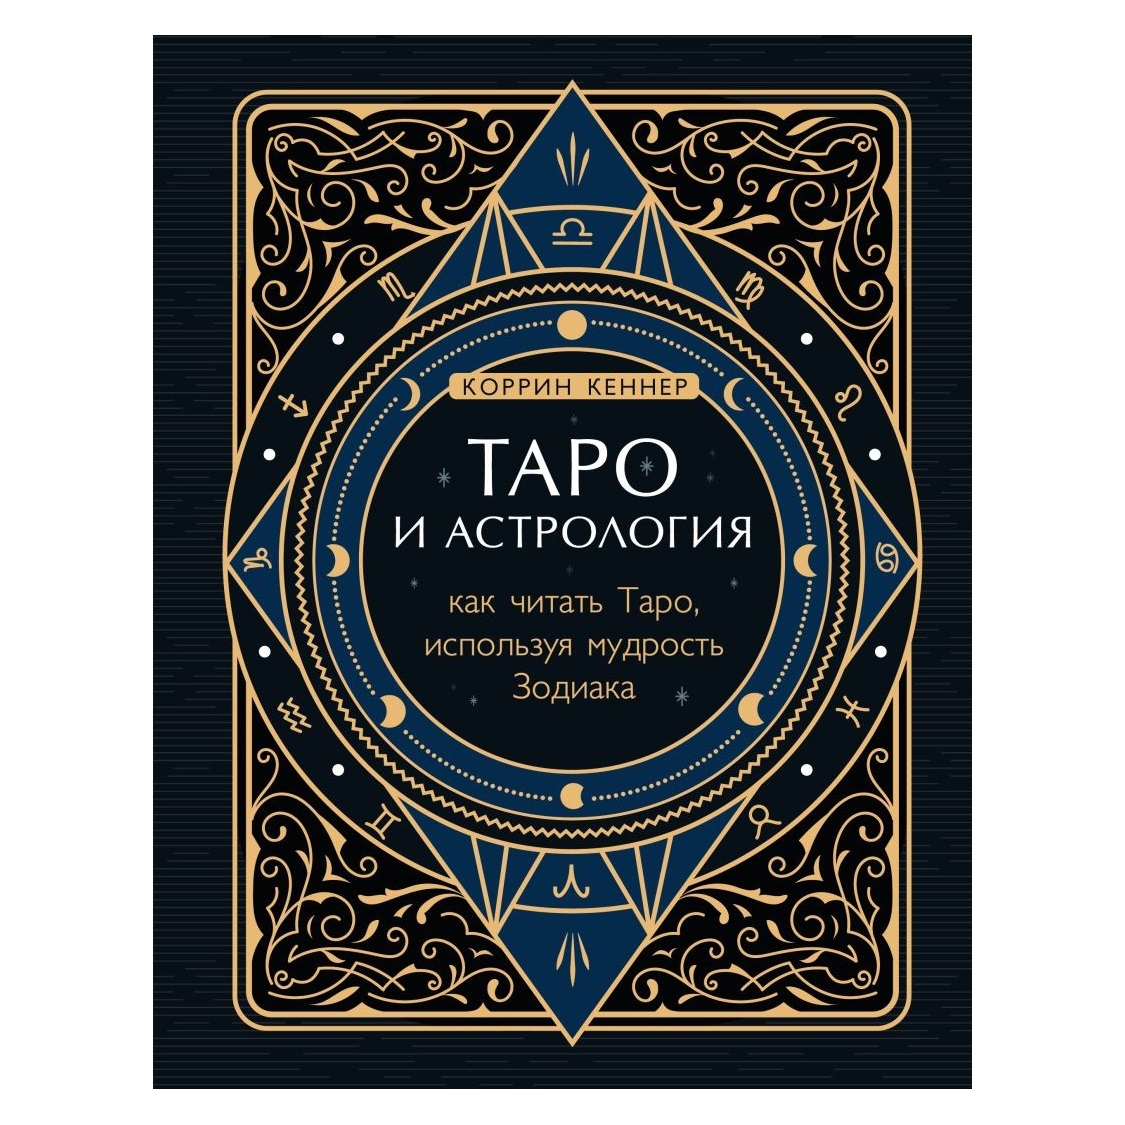 

Коррин Кеннер "Таро и астрология. Как читать Таро, используя мудрость Зодиака"